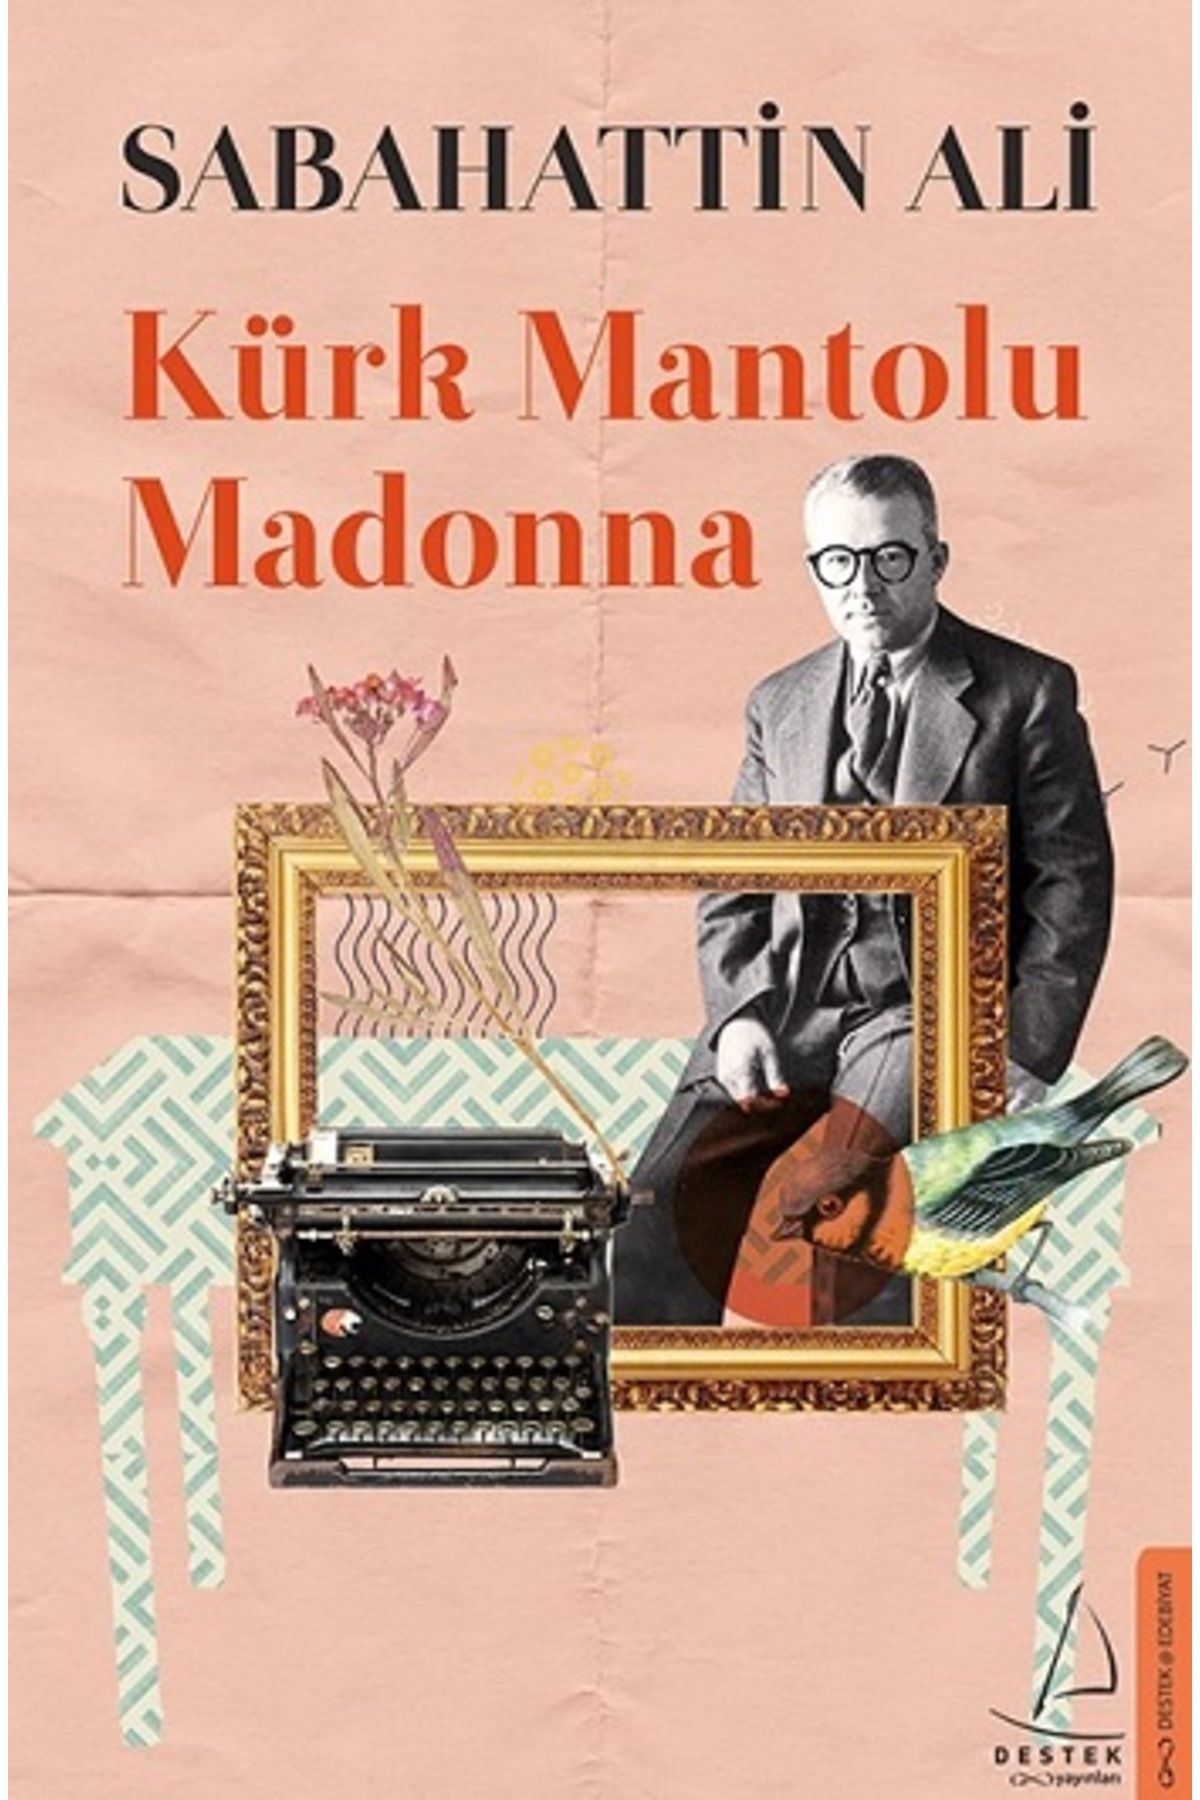 Destek Yayınları Kürk Mantolu Madonna